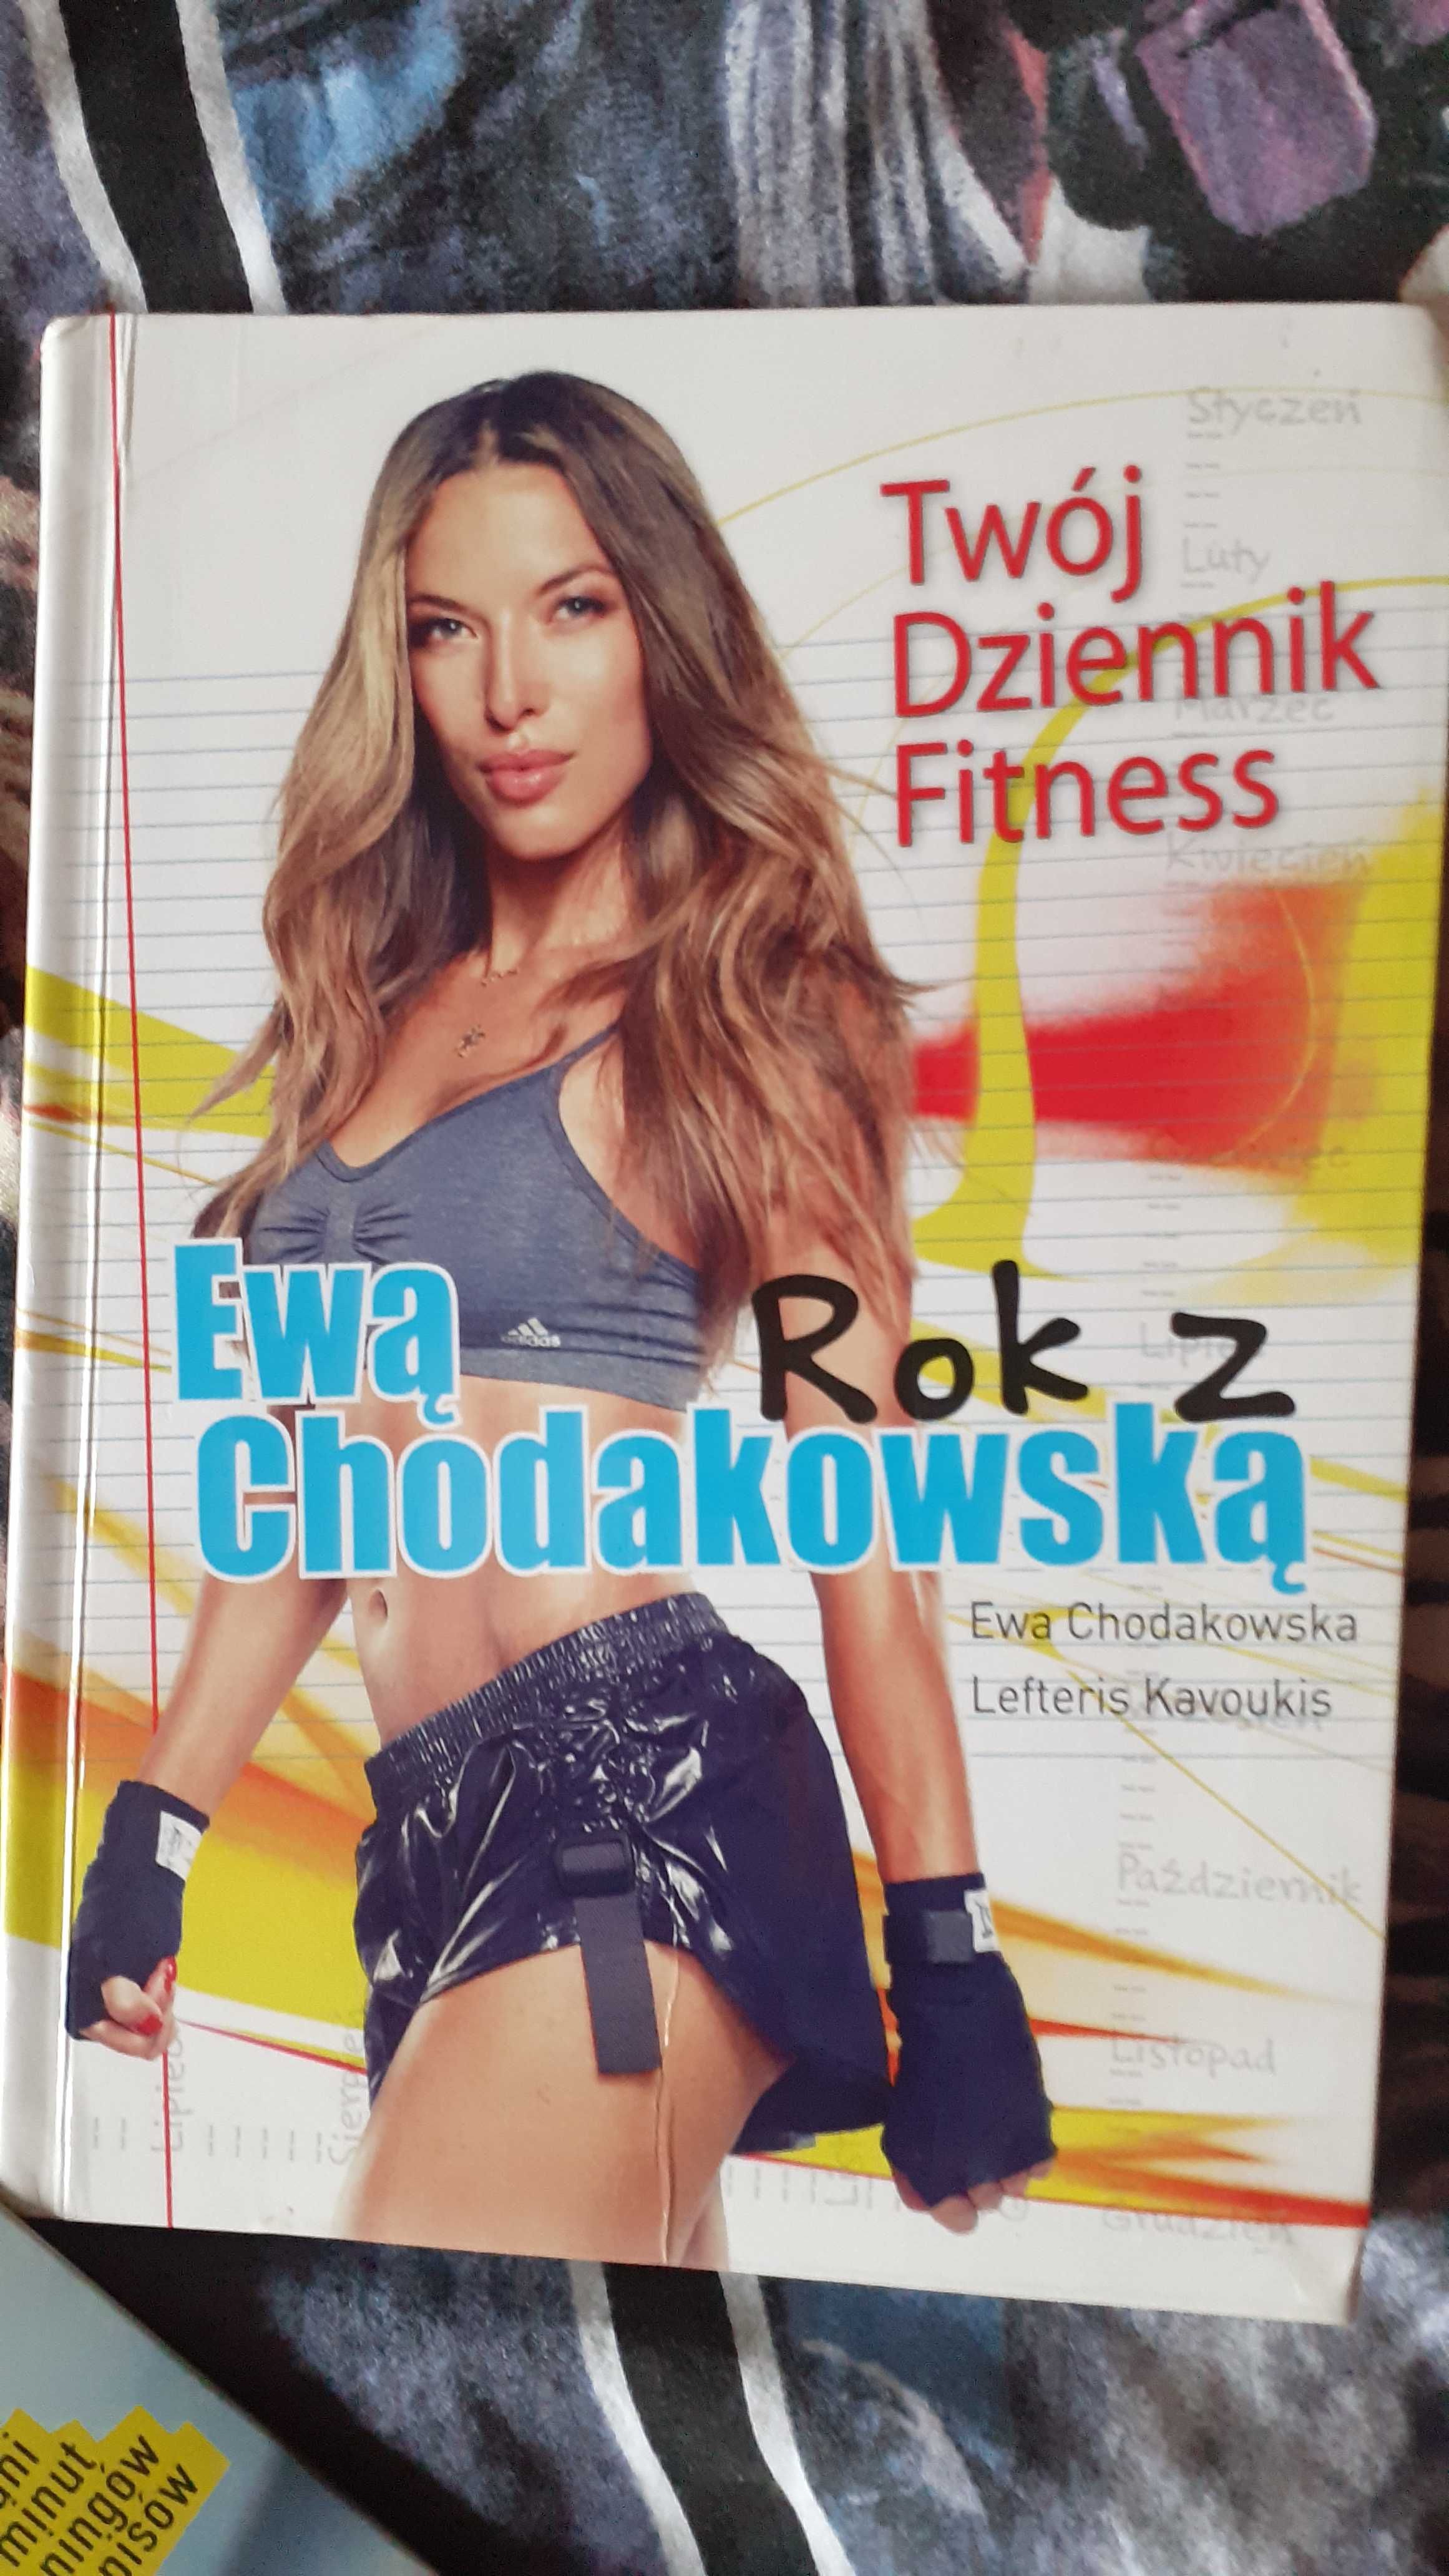 Chodakowska ,zestaw książek,fitness,odchudzanie